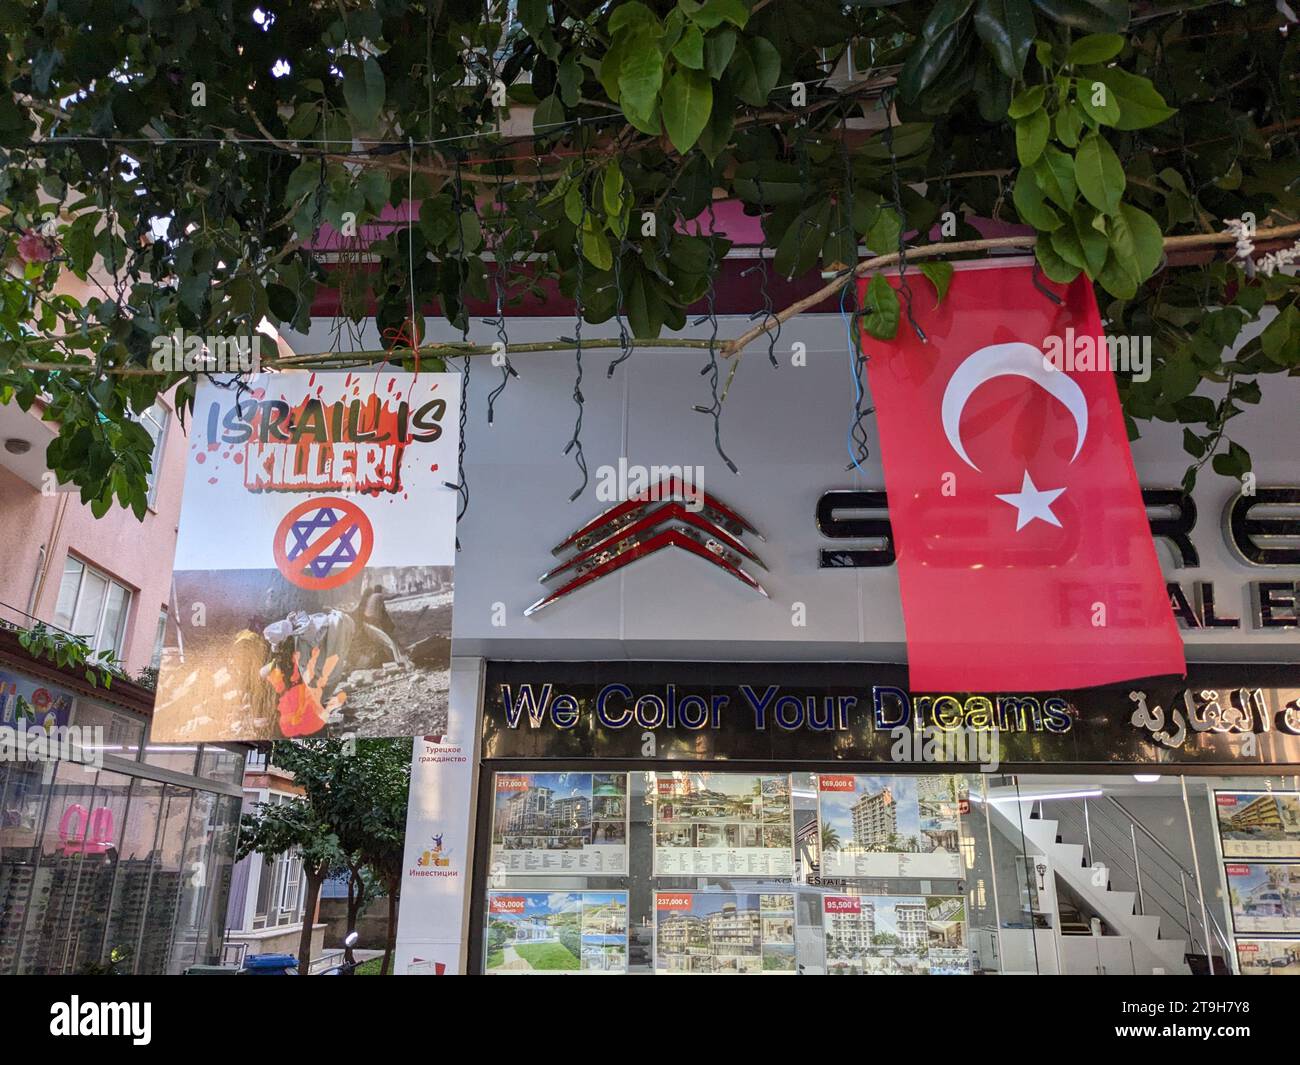 Turchia Alanya, proteste anti israeliane.proteste pro palestinesi-proteste anti israele bandiere con scritte 'killer israeliani' appese davanti a un negozio Foto Stock